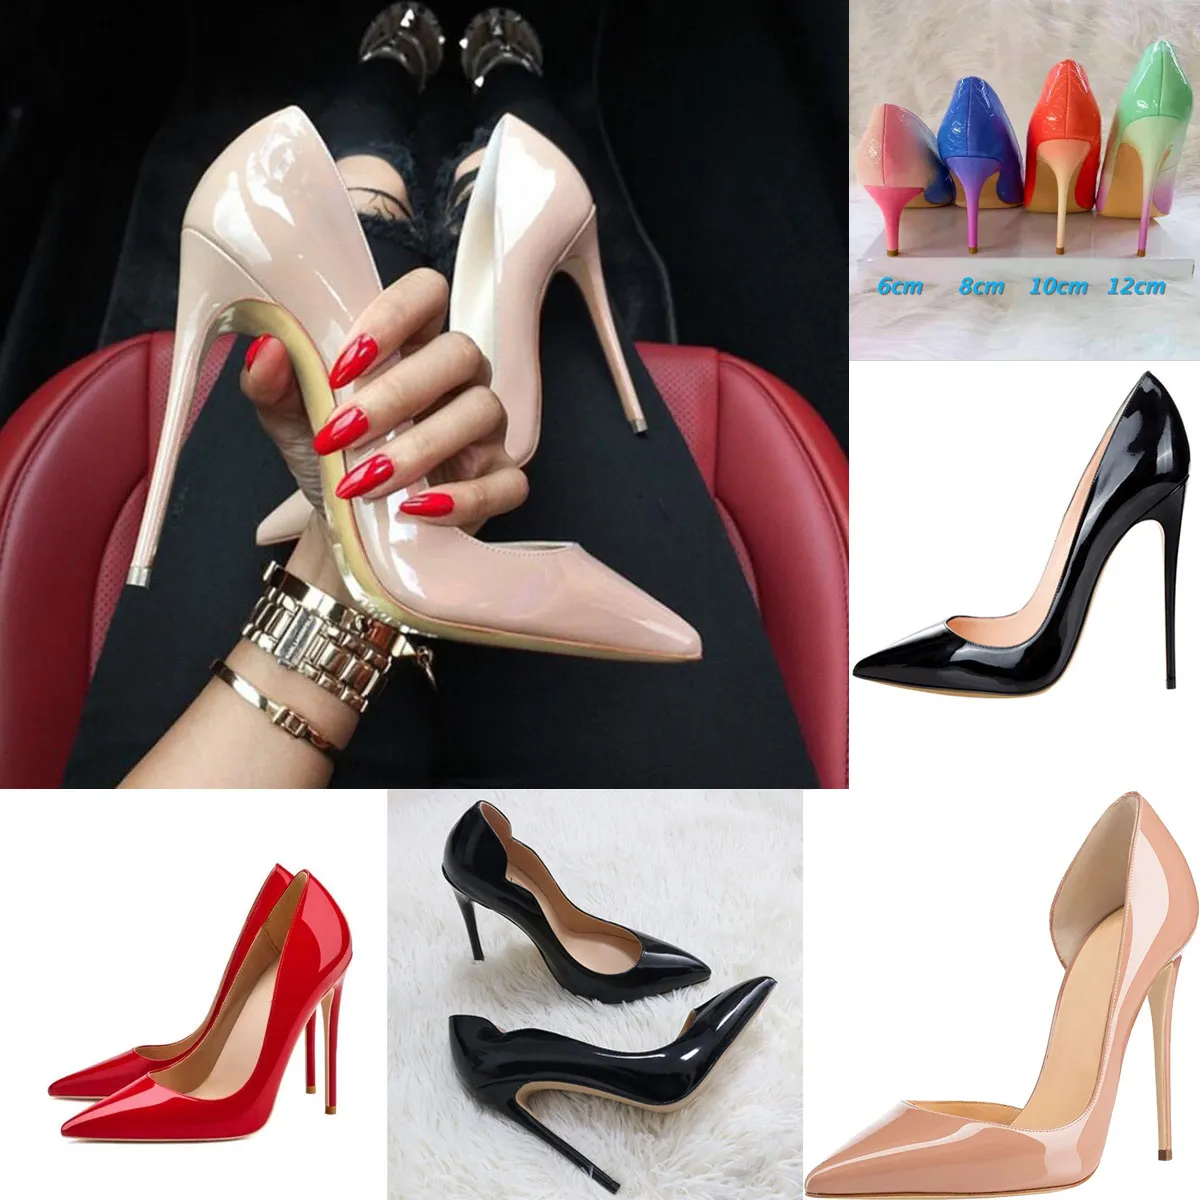 Star Style Chaussures De Luxe Femmes Rouge Brillant Bas Pompes Marque Chaussures À Talons Hauts Robe Chaussure De Mariage